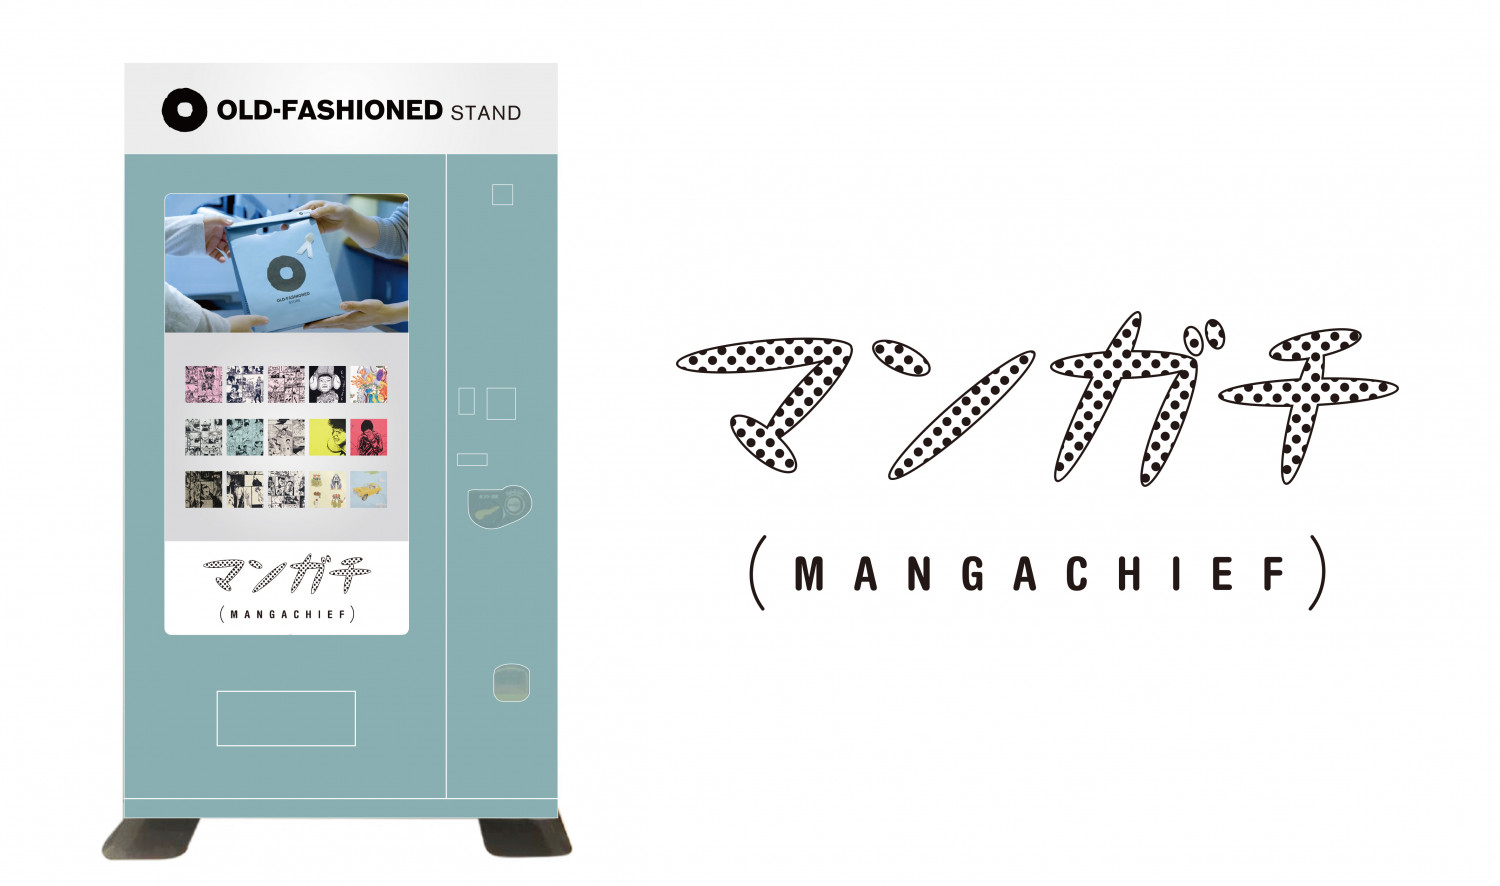 Vending Machine Mangachi (MANGACHIEF) Now Sells Handkerchief Versions of Taiyo Matsumoto’s Manga!